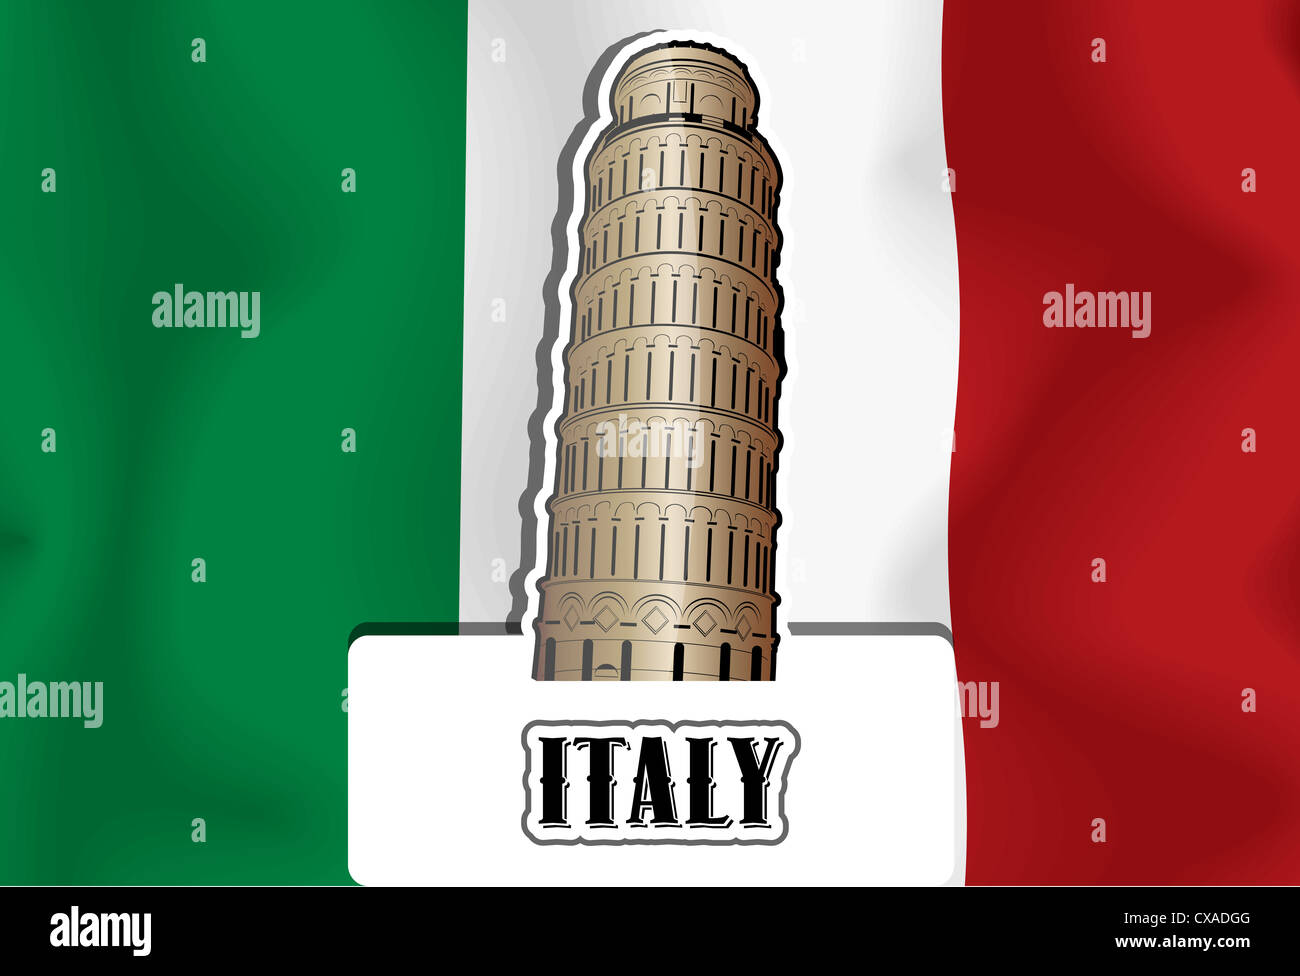 L'Italie, drapeau italien, Tour de Pise, vector illustration Banque D'Images